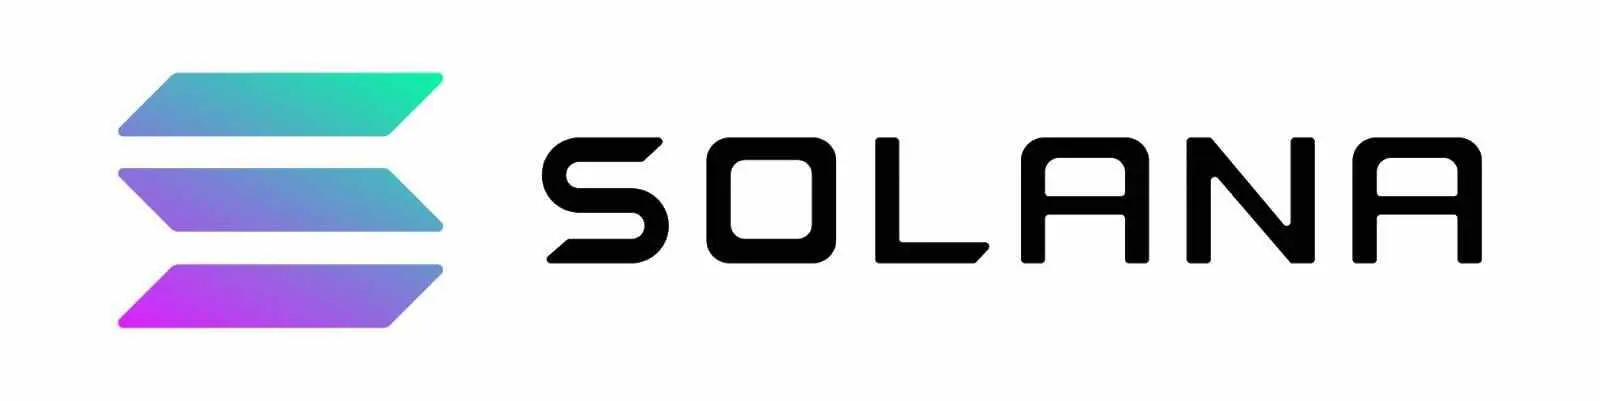 перспективная криптовалюта solana sol